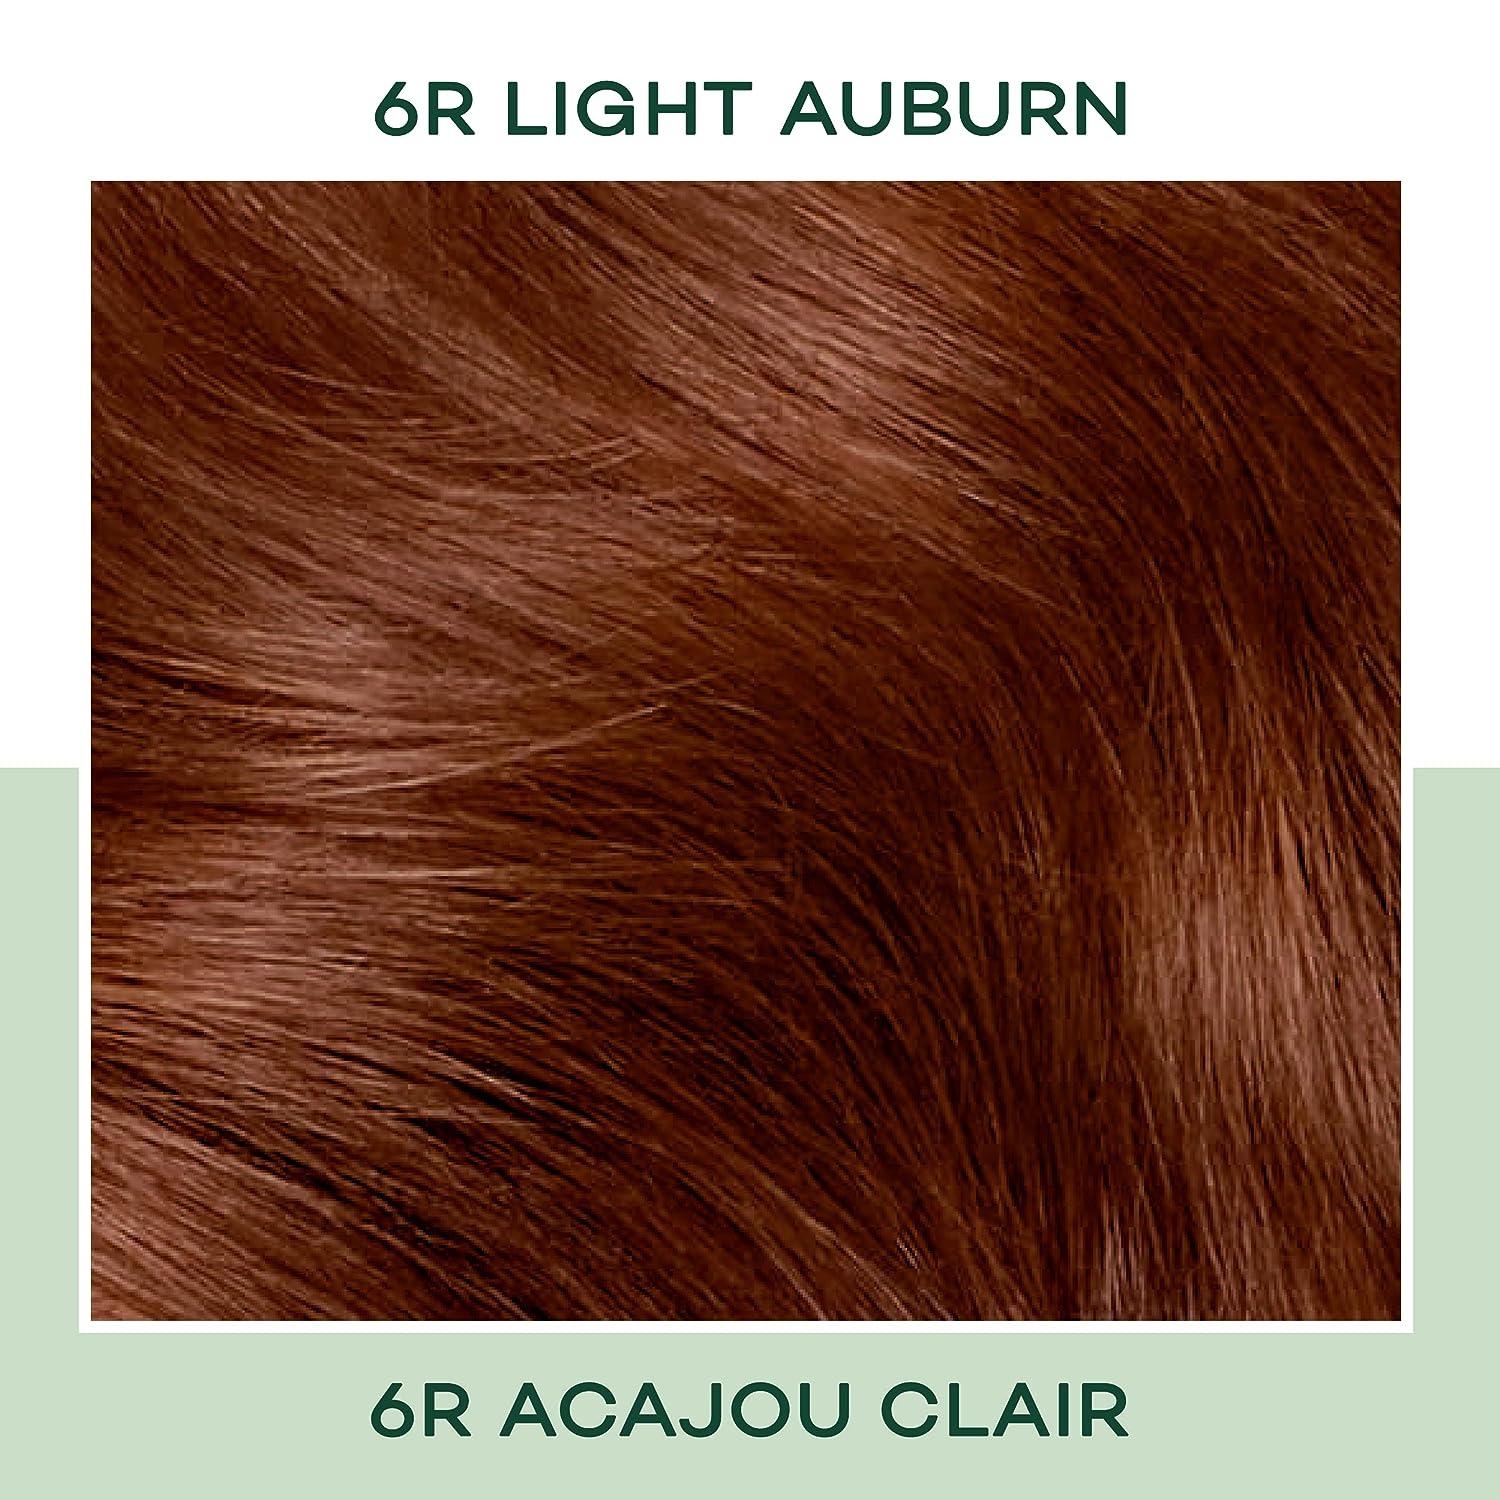 light auburn hair